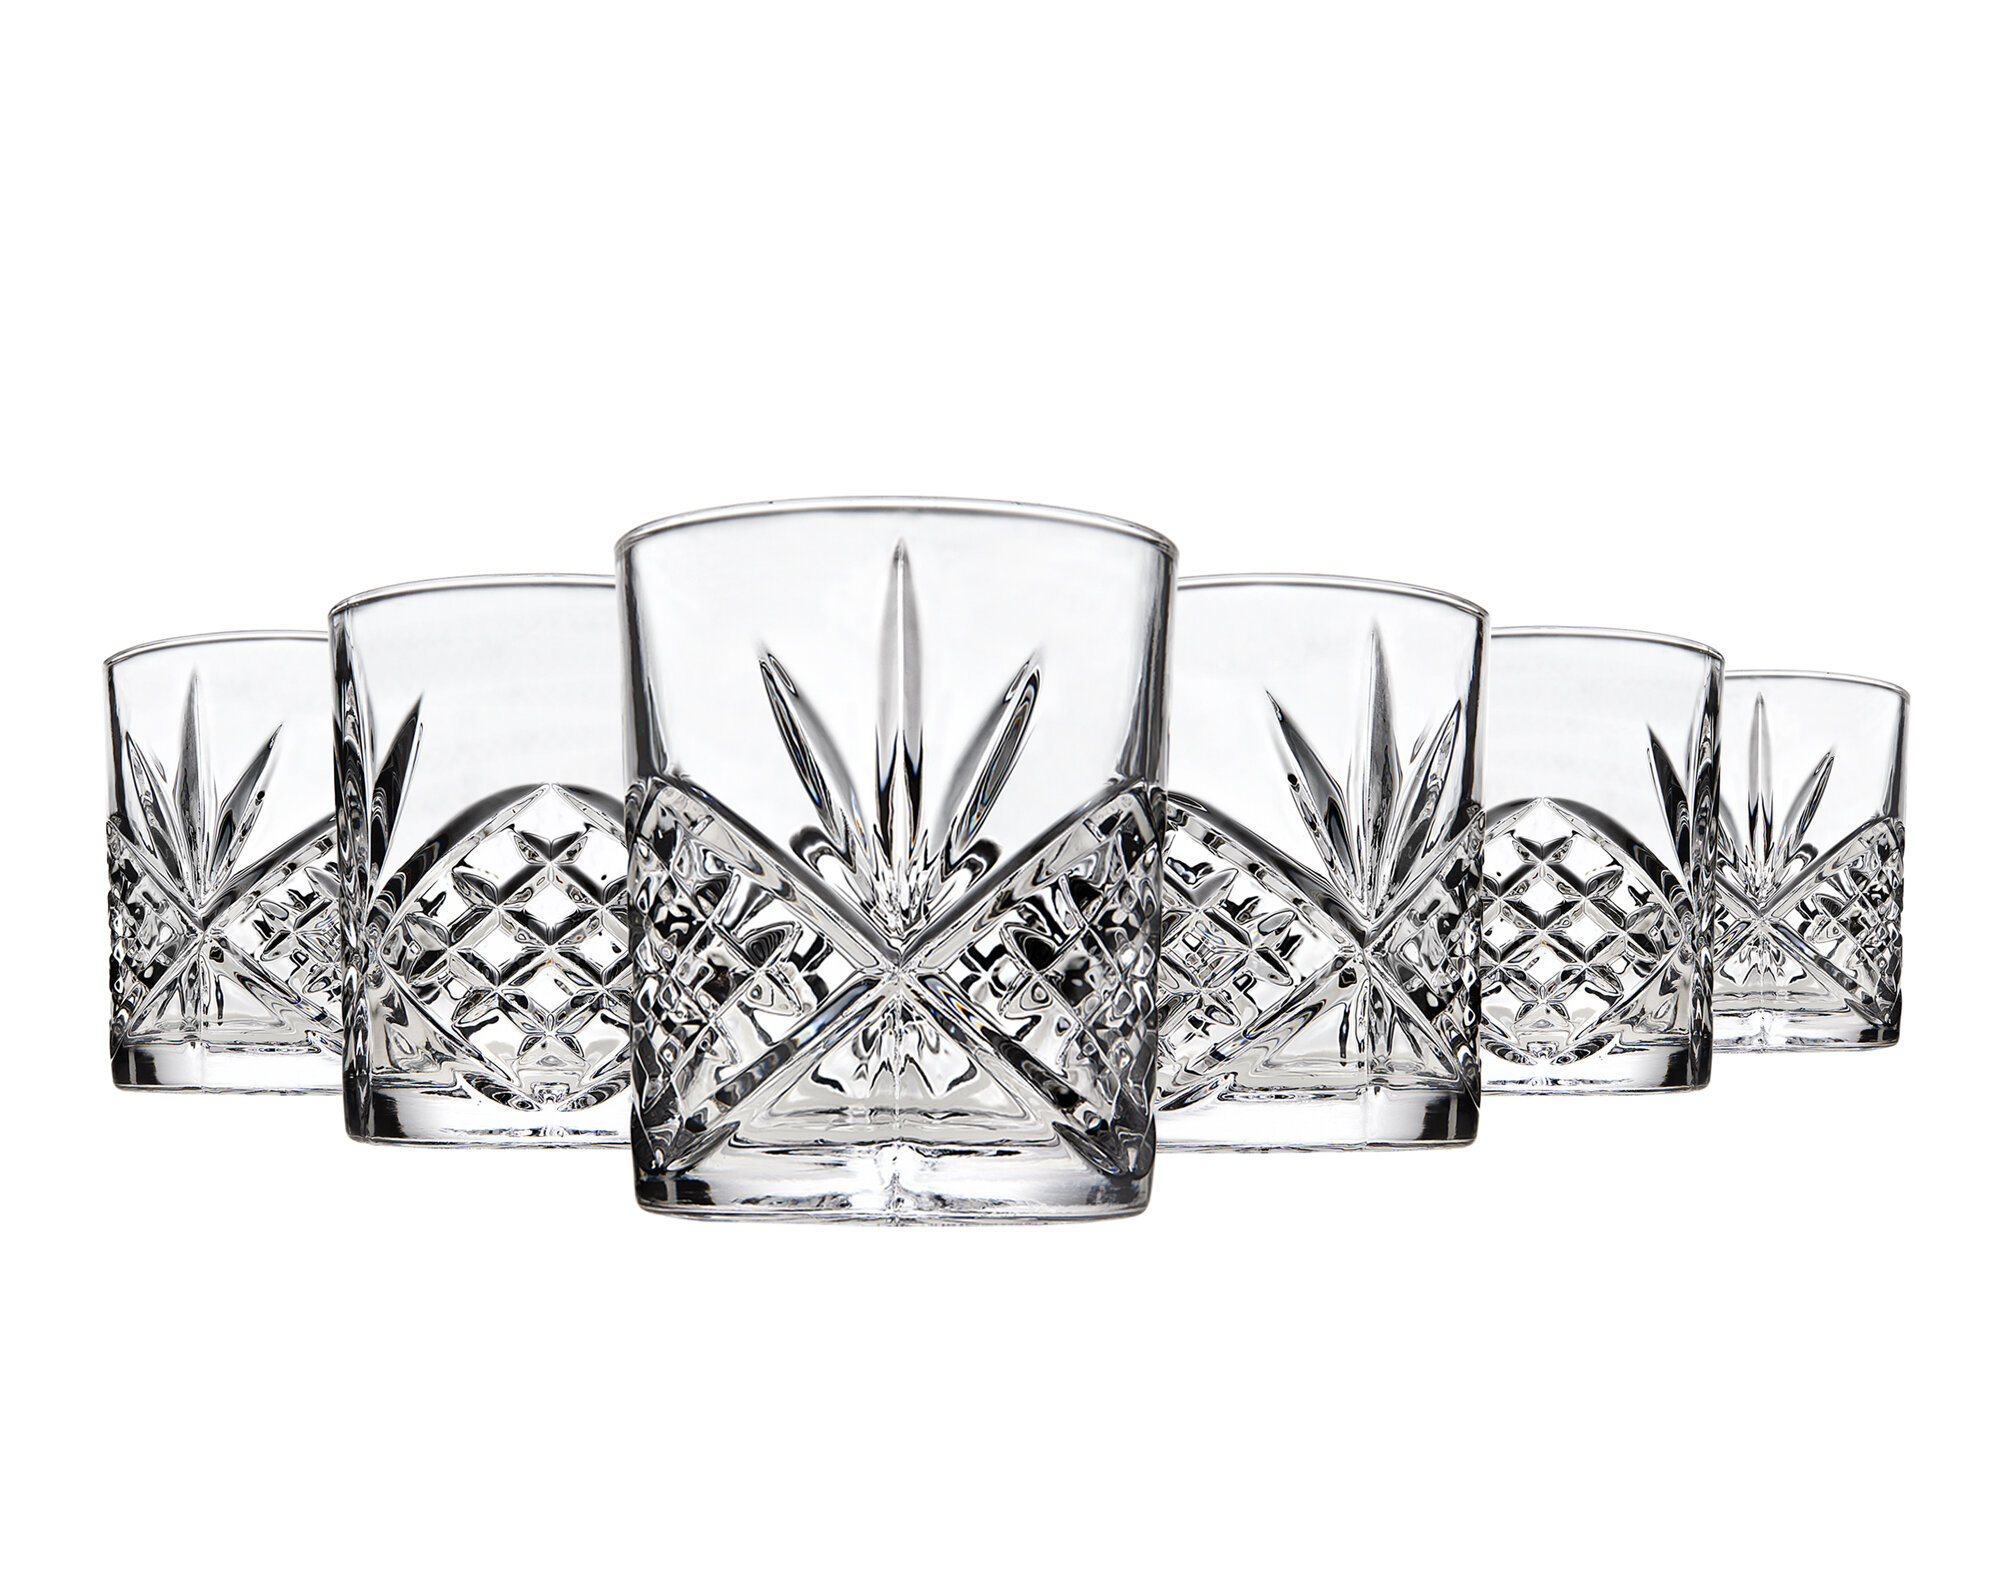 Godinger Silver Art Co Dublin Crystal Whiskey Glass 11oz & Reviews